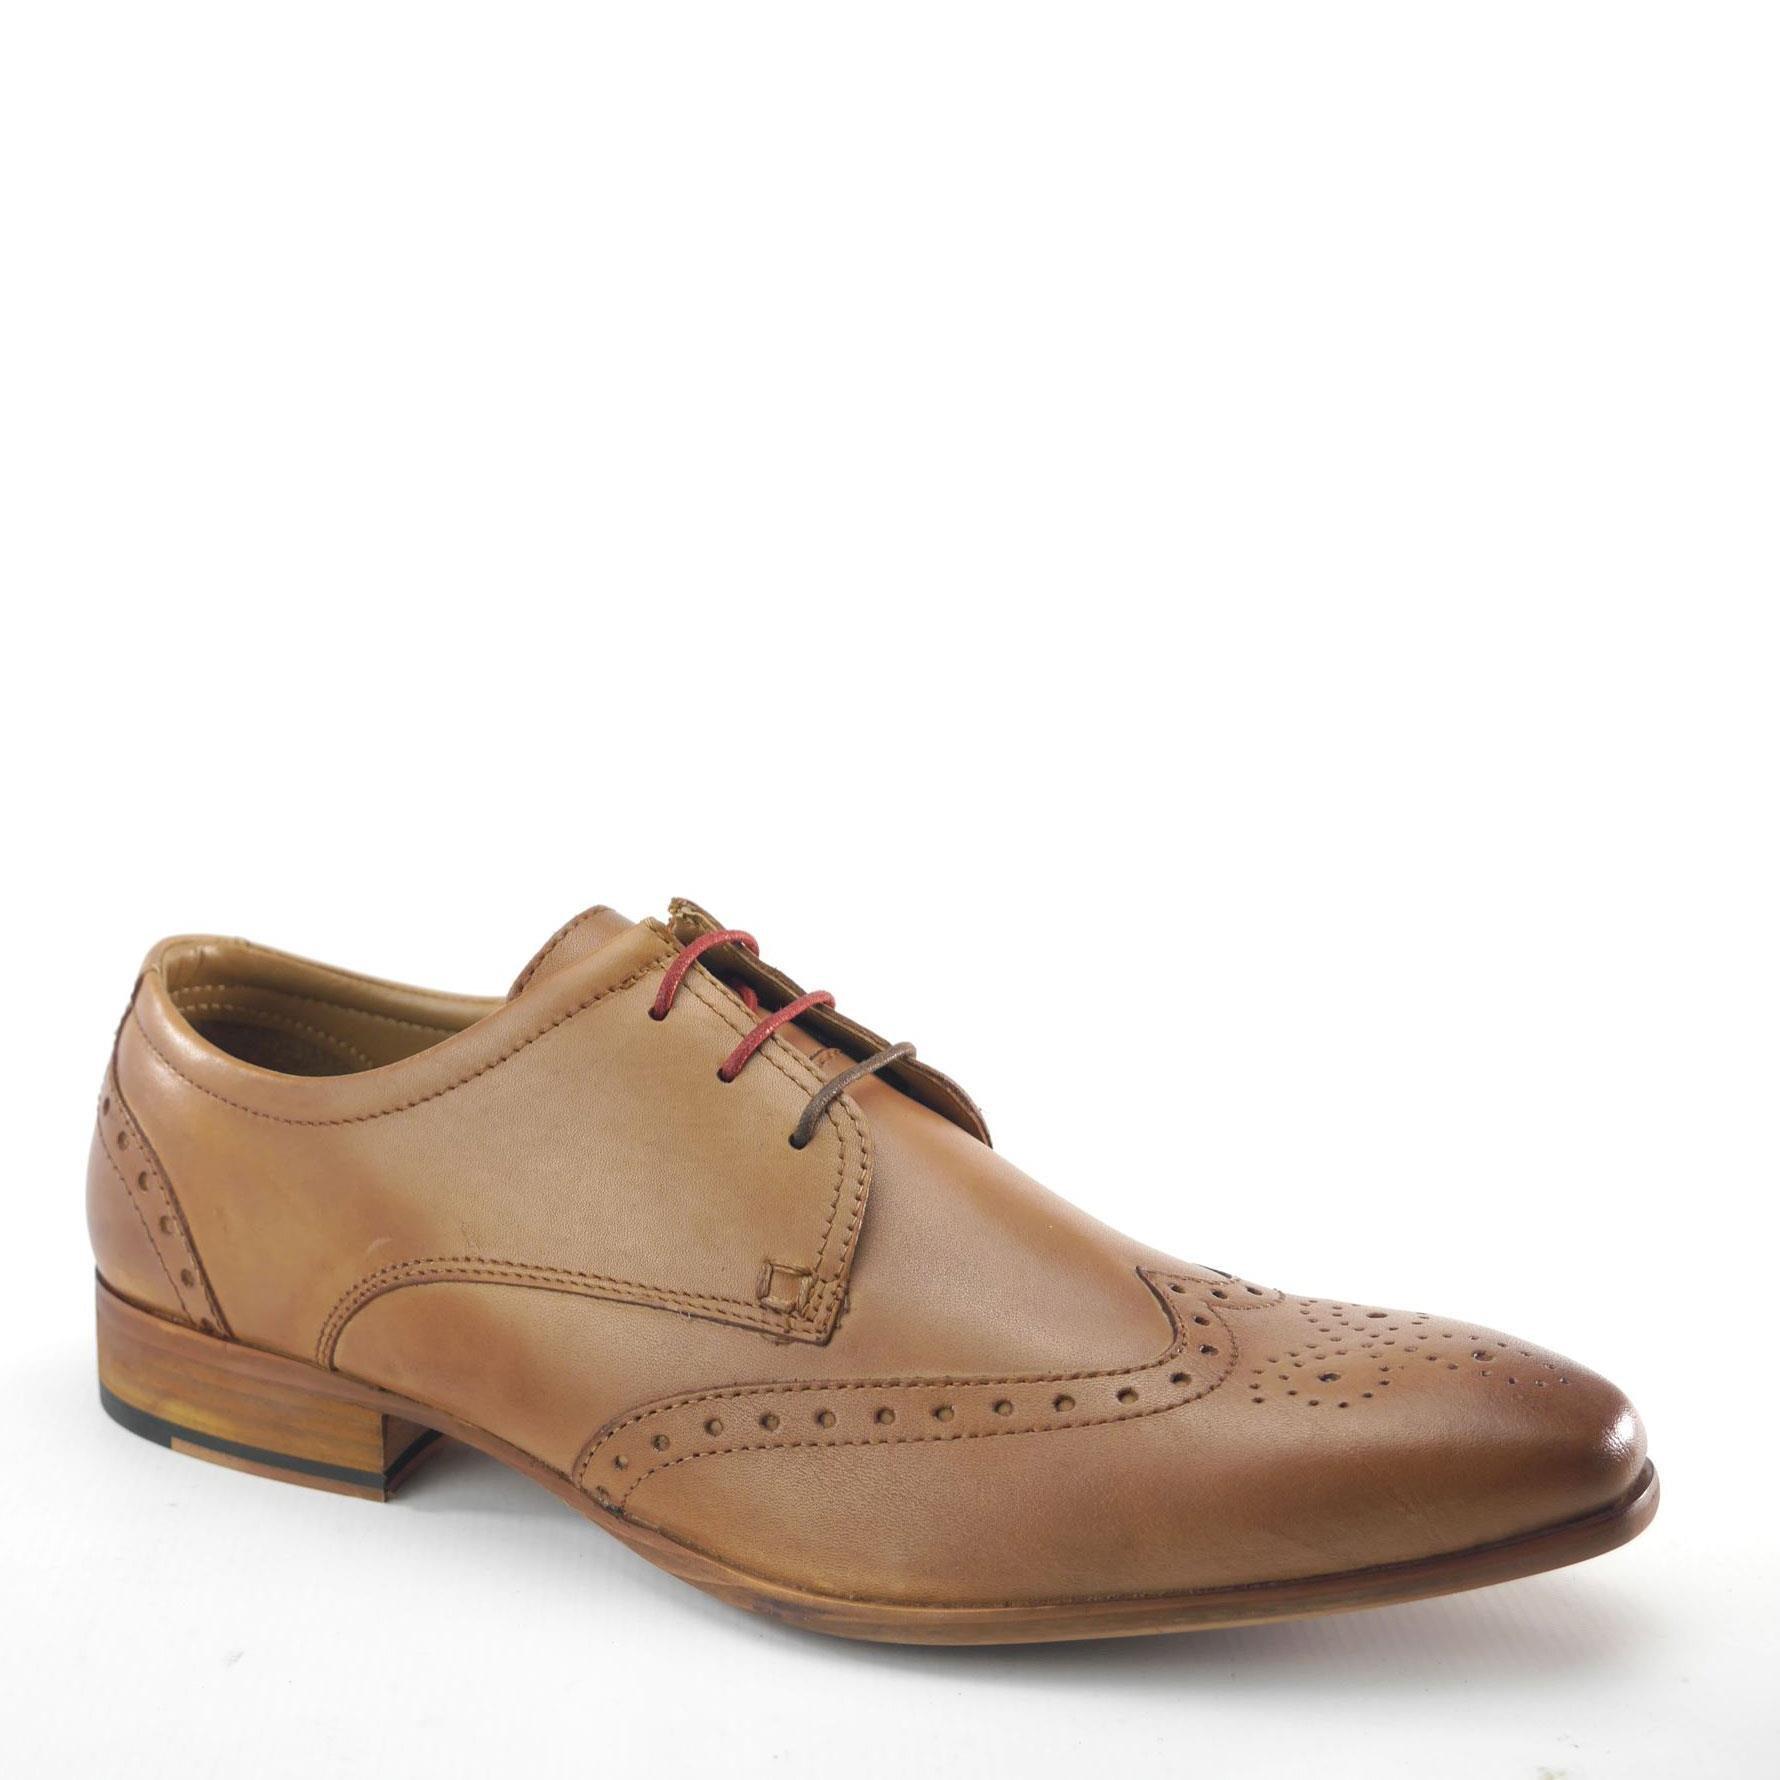 Кожаные туфли-броги Clapham Frank James, коричневый цена и фото